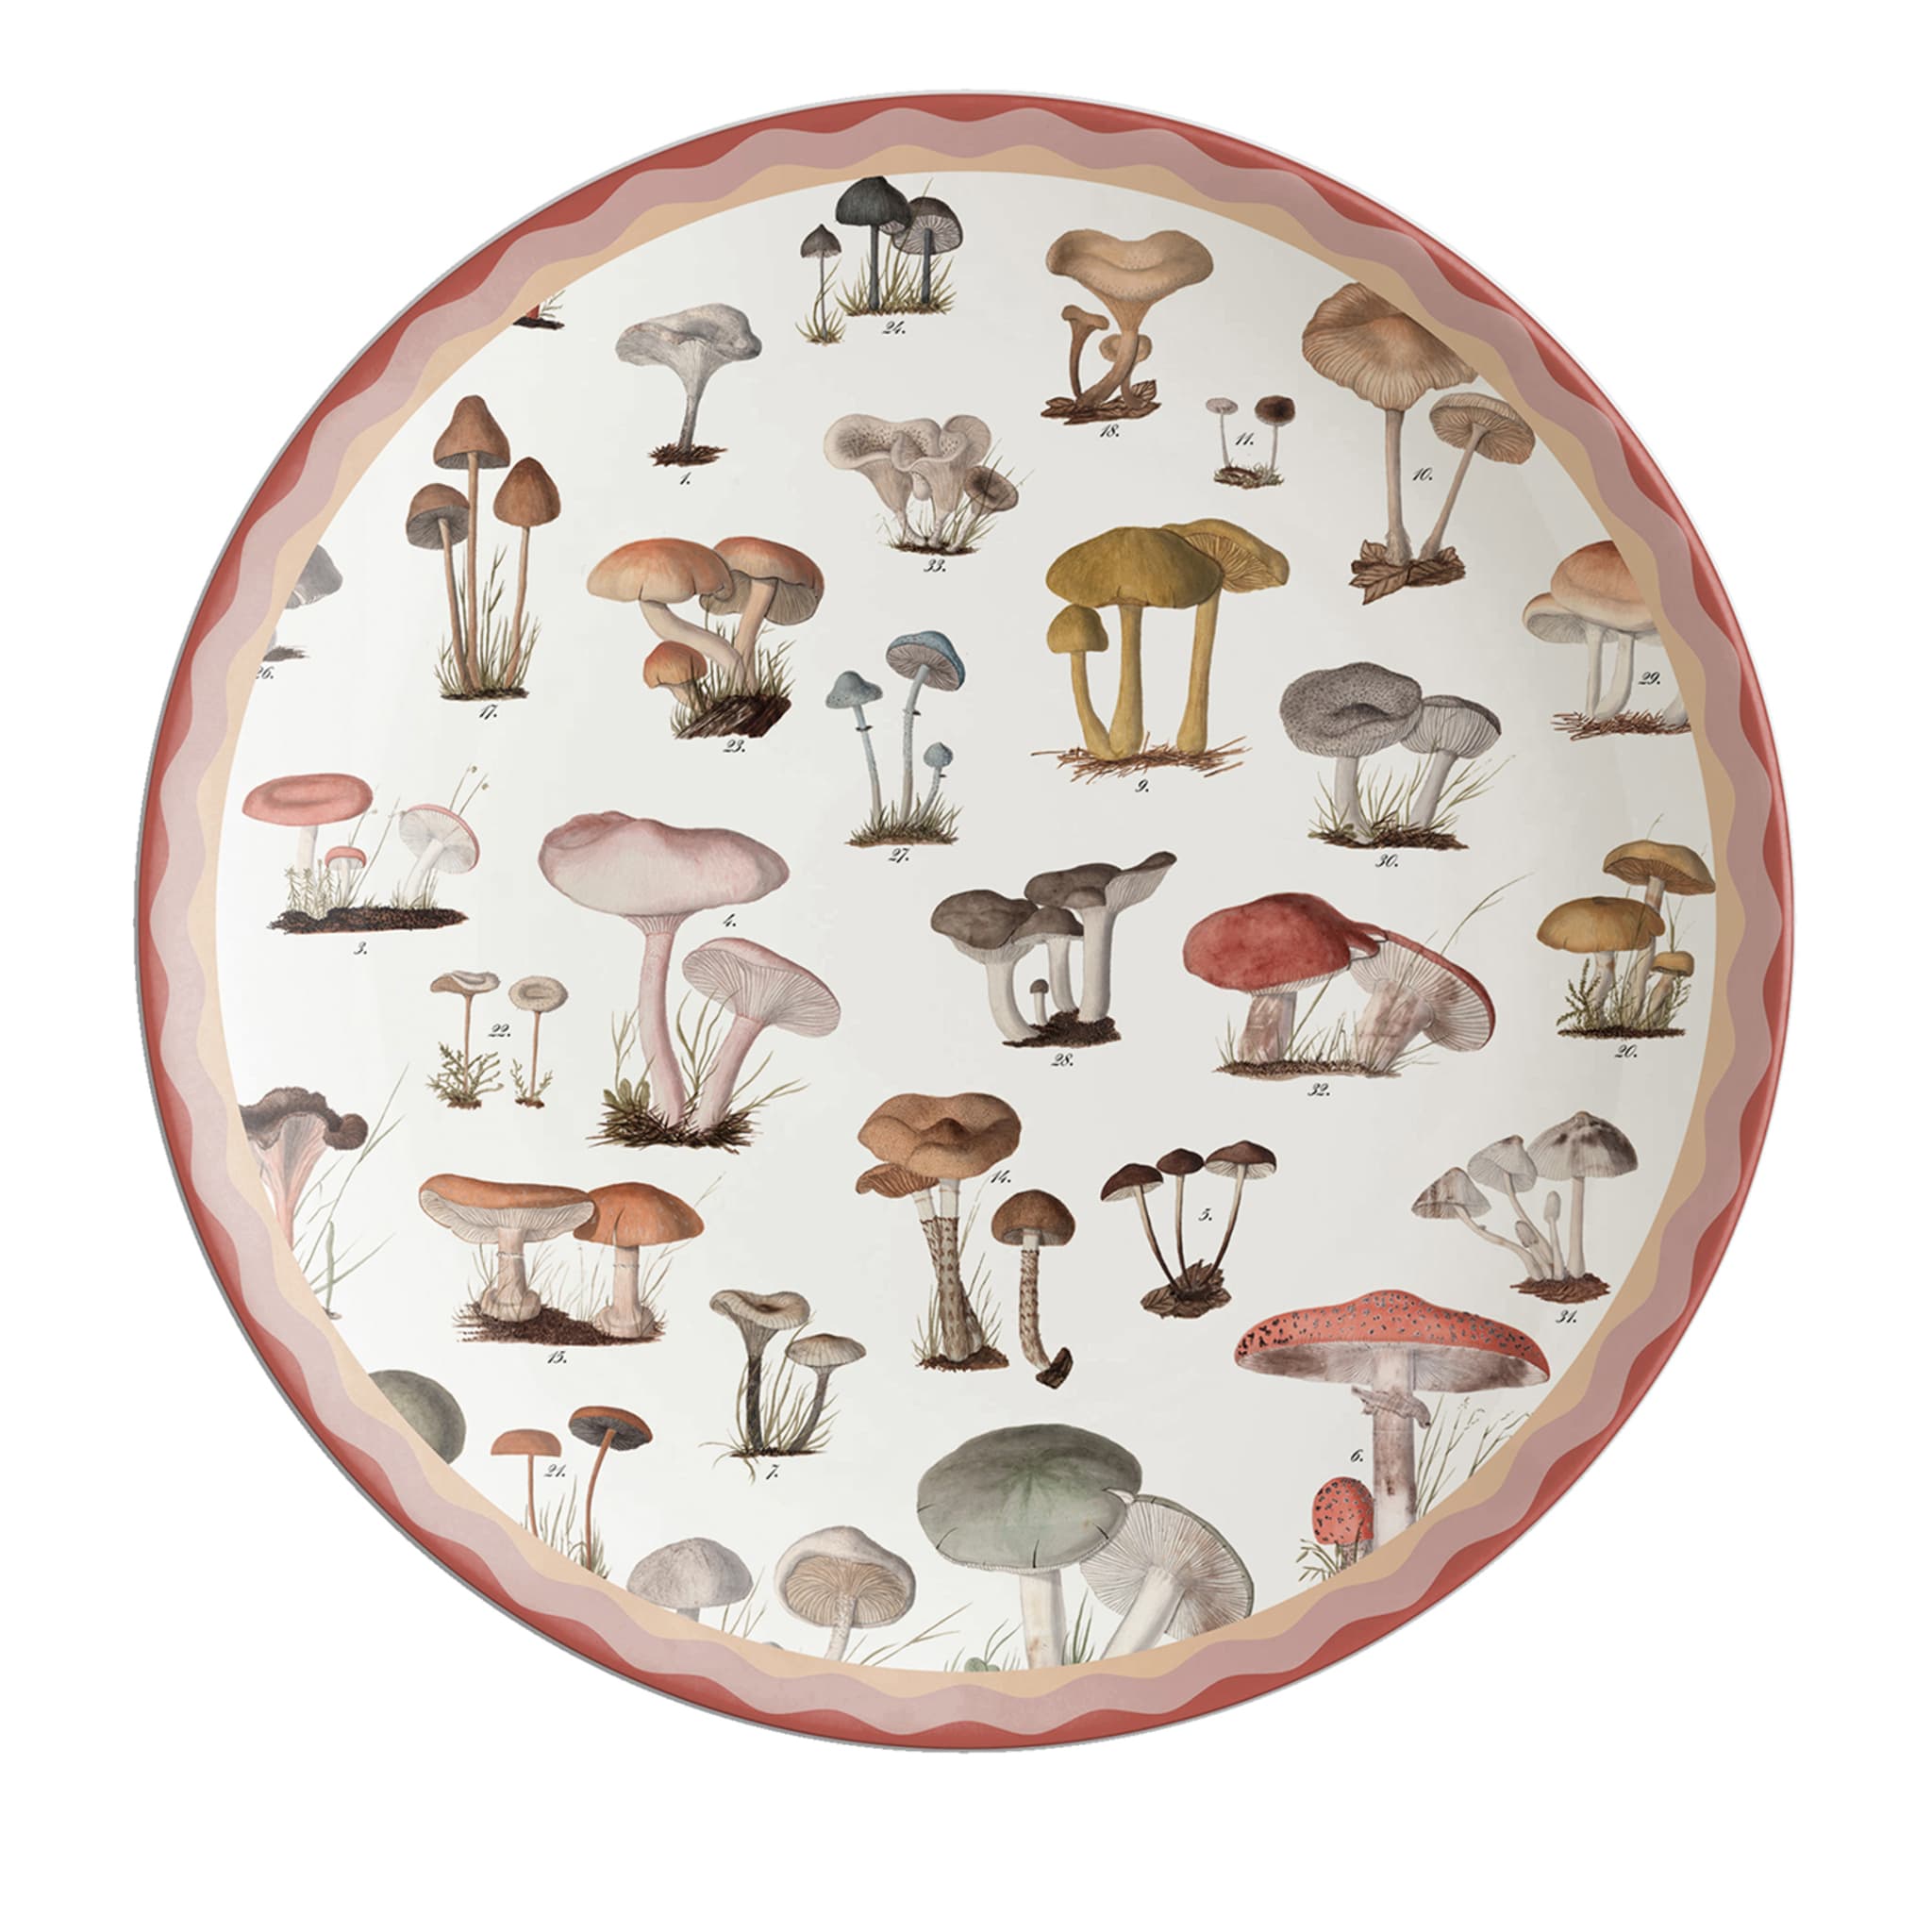 Cabinet De Curiosités Porcelain Charger Plate With Mushrooms - Main view